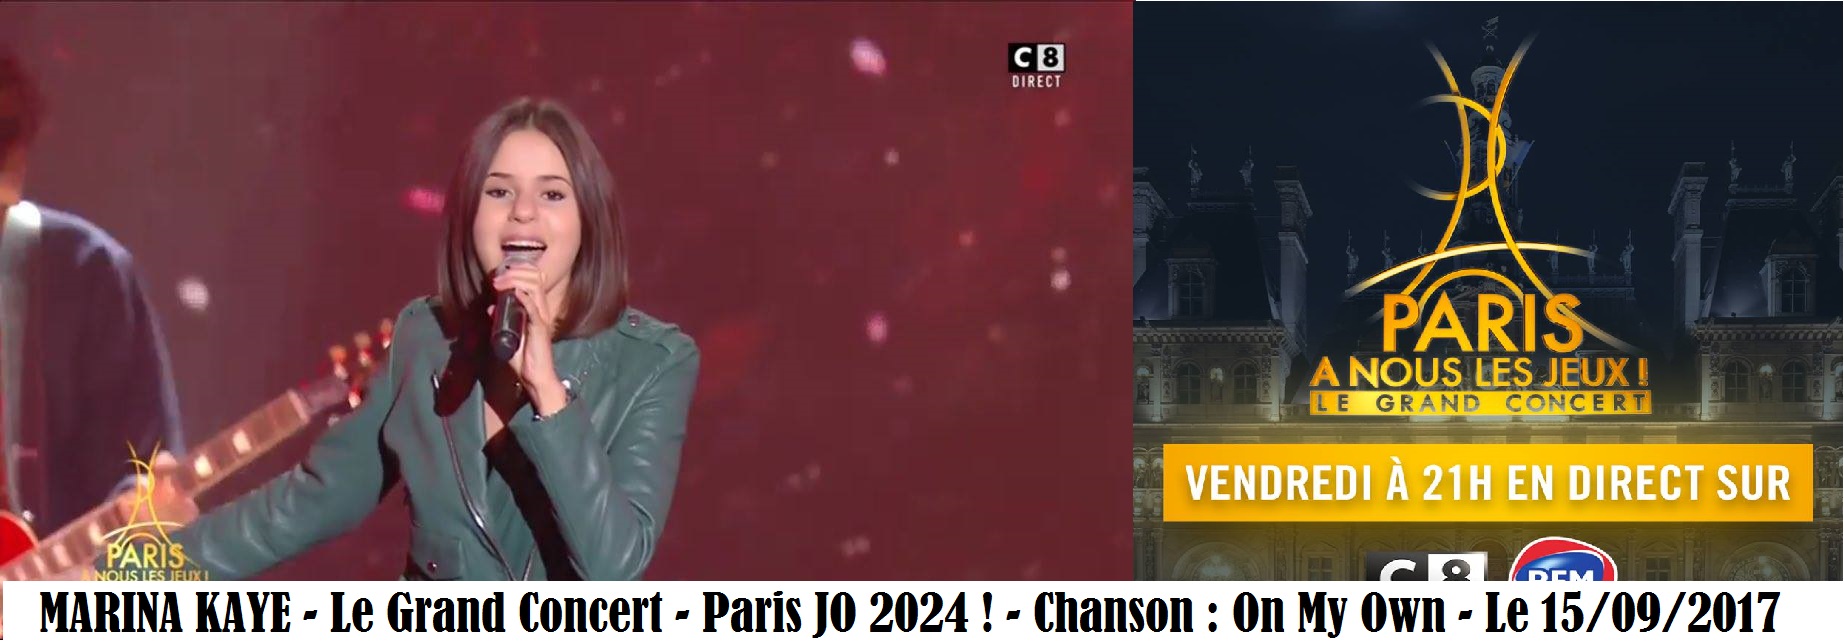 Marina au Grand Concert pour JO Paris 2024 (1)